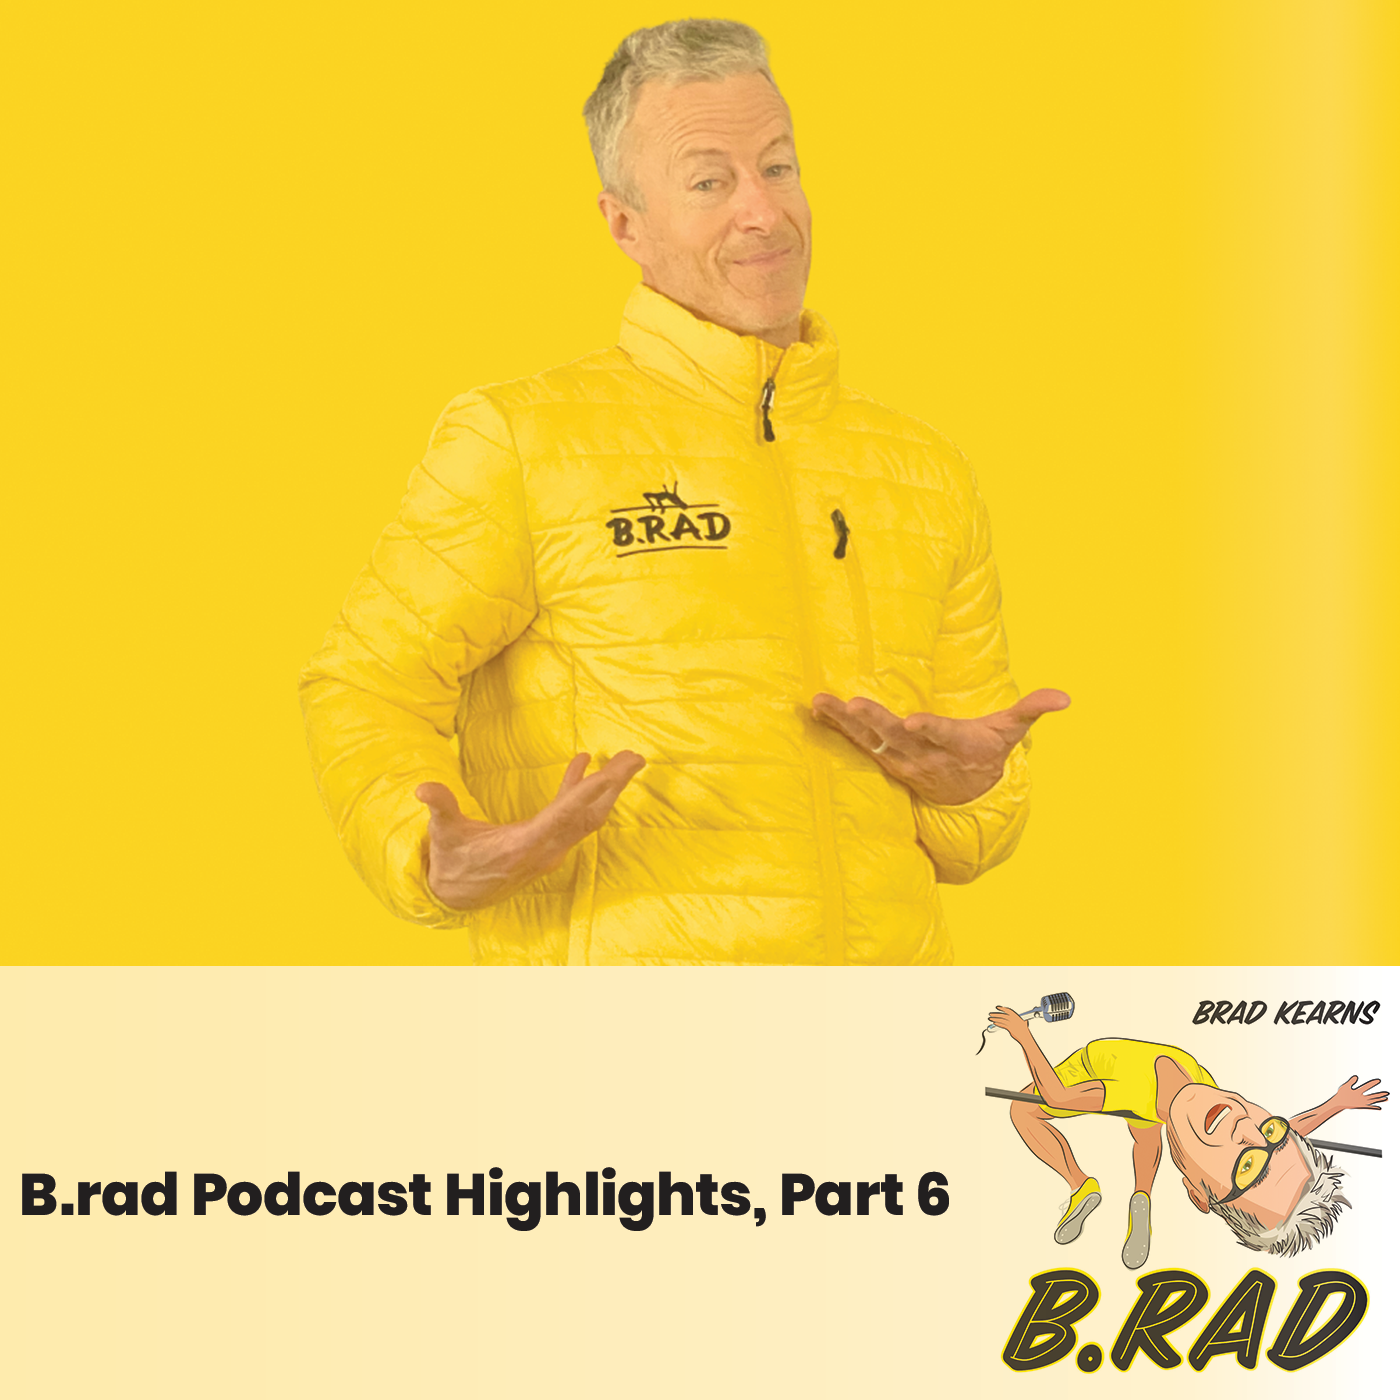 B.rad Podcast Highlights, Part 6